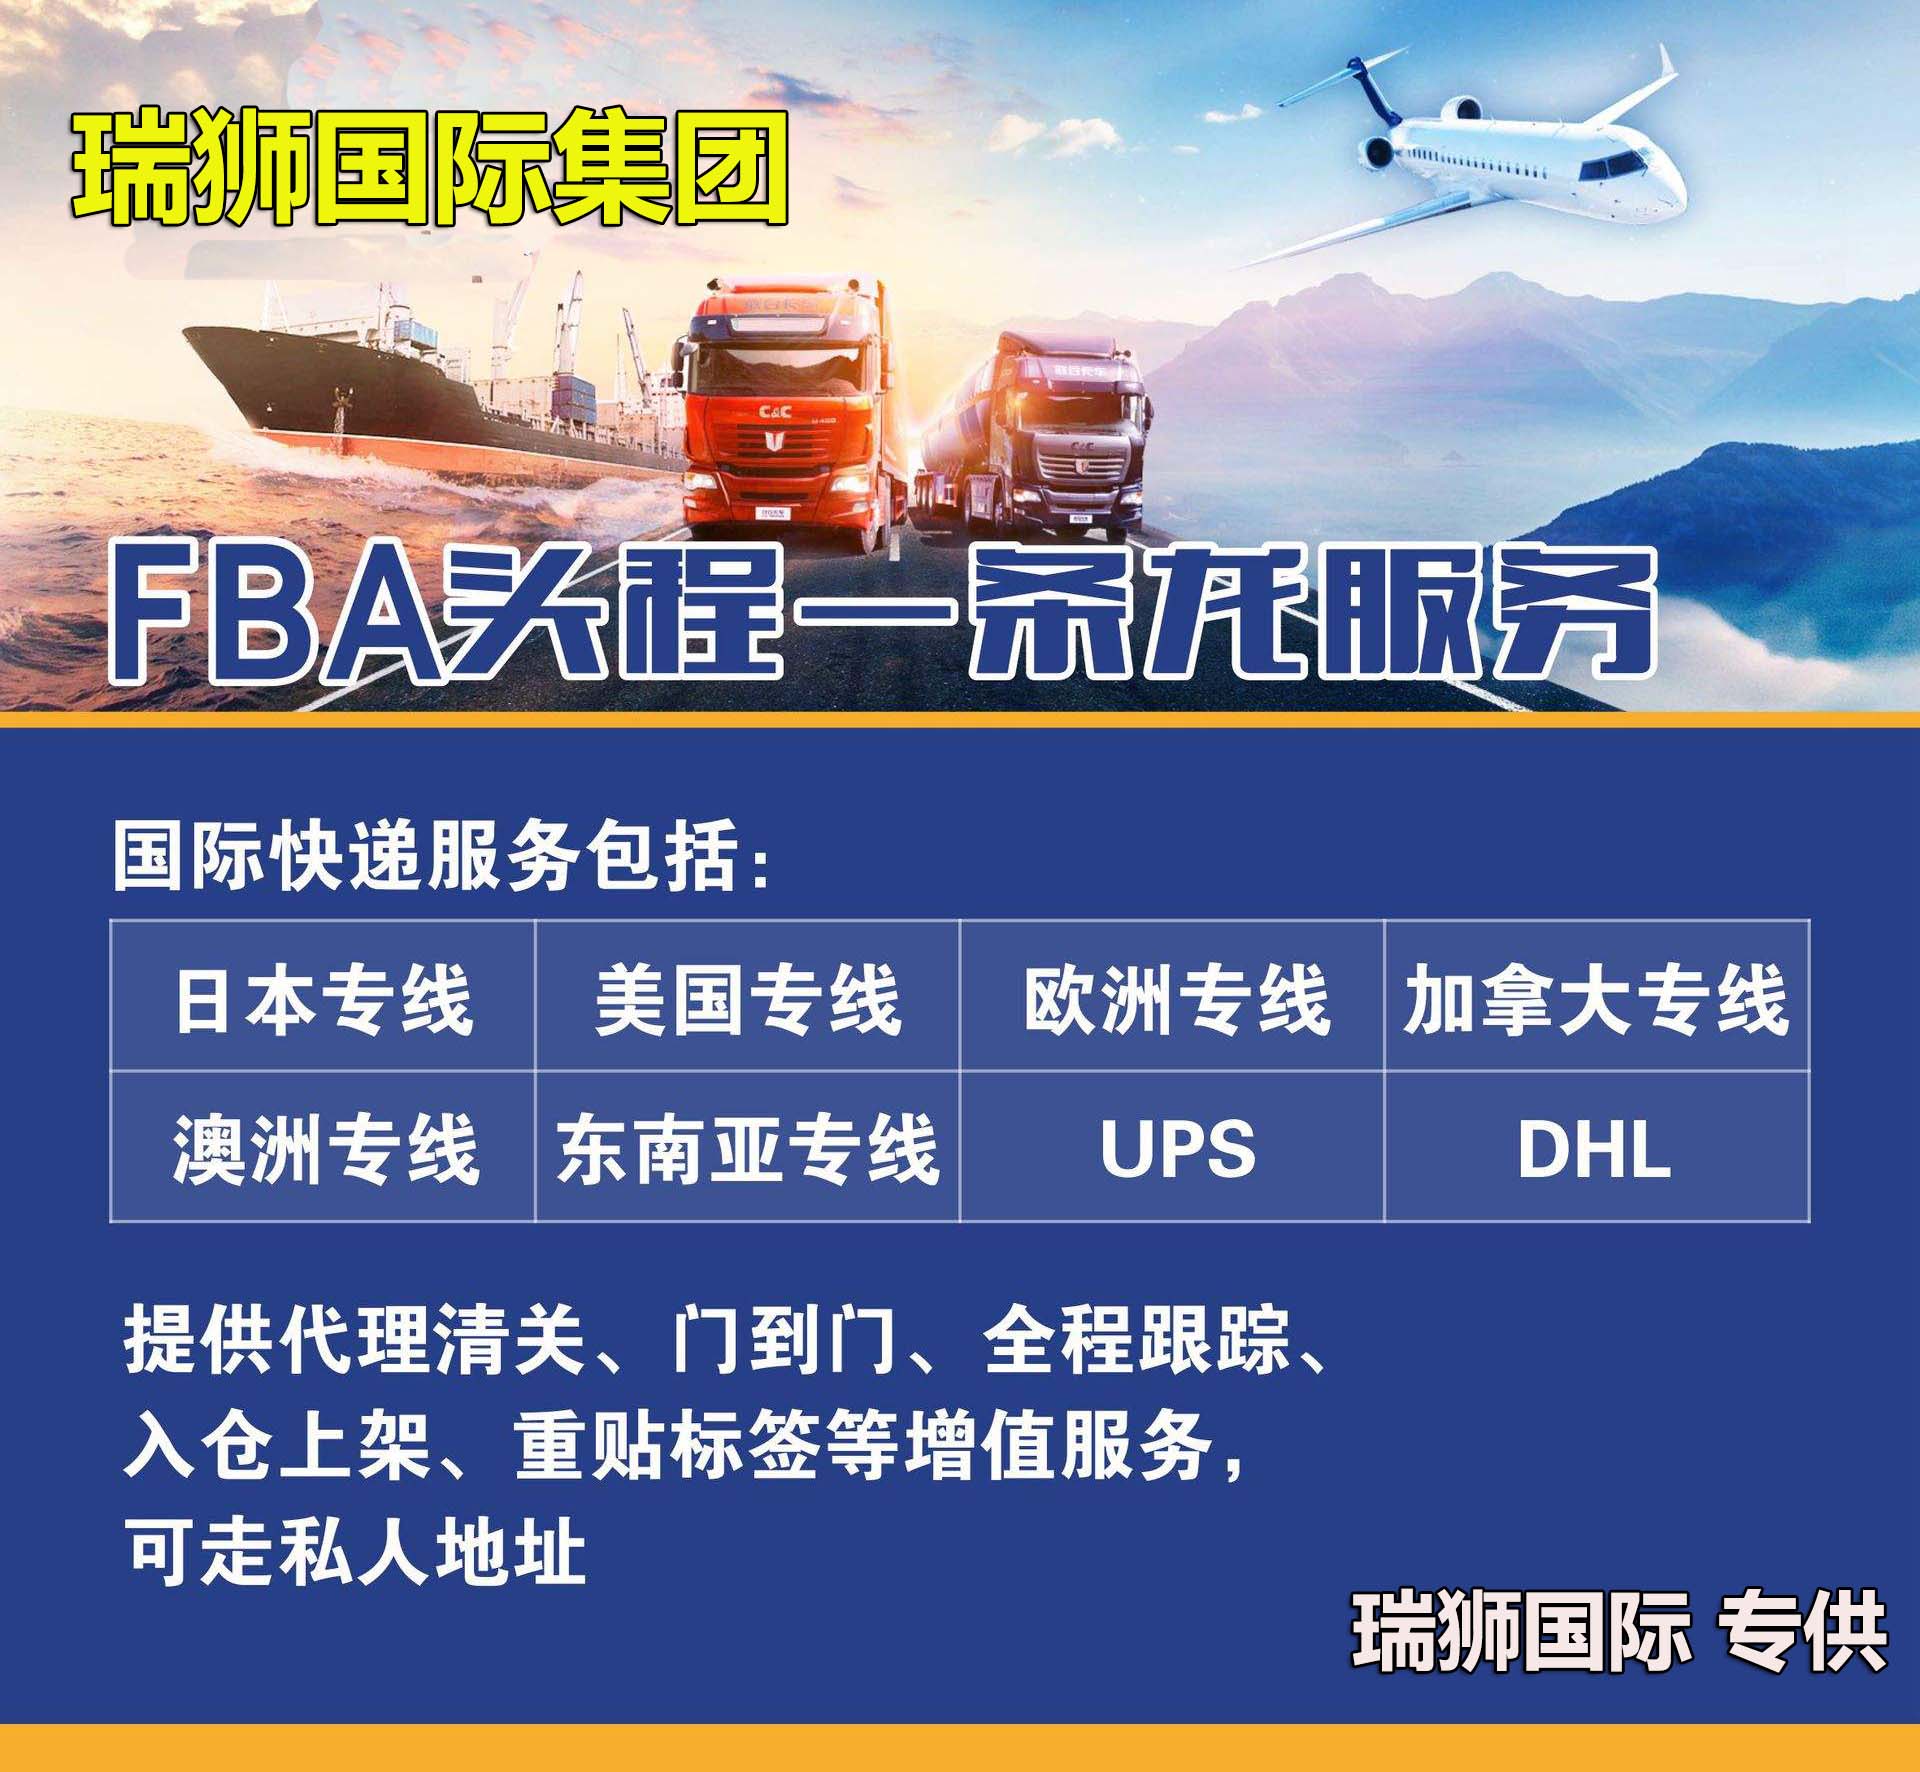 越南货货运代理 越南国际物流公司  越南进出口报关公司 越南国际货运代理有限公司